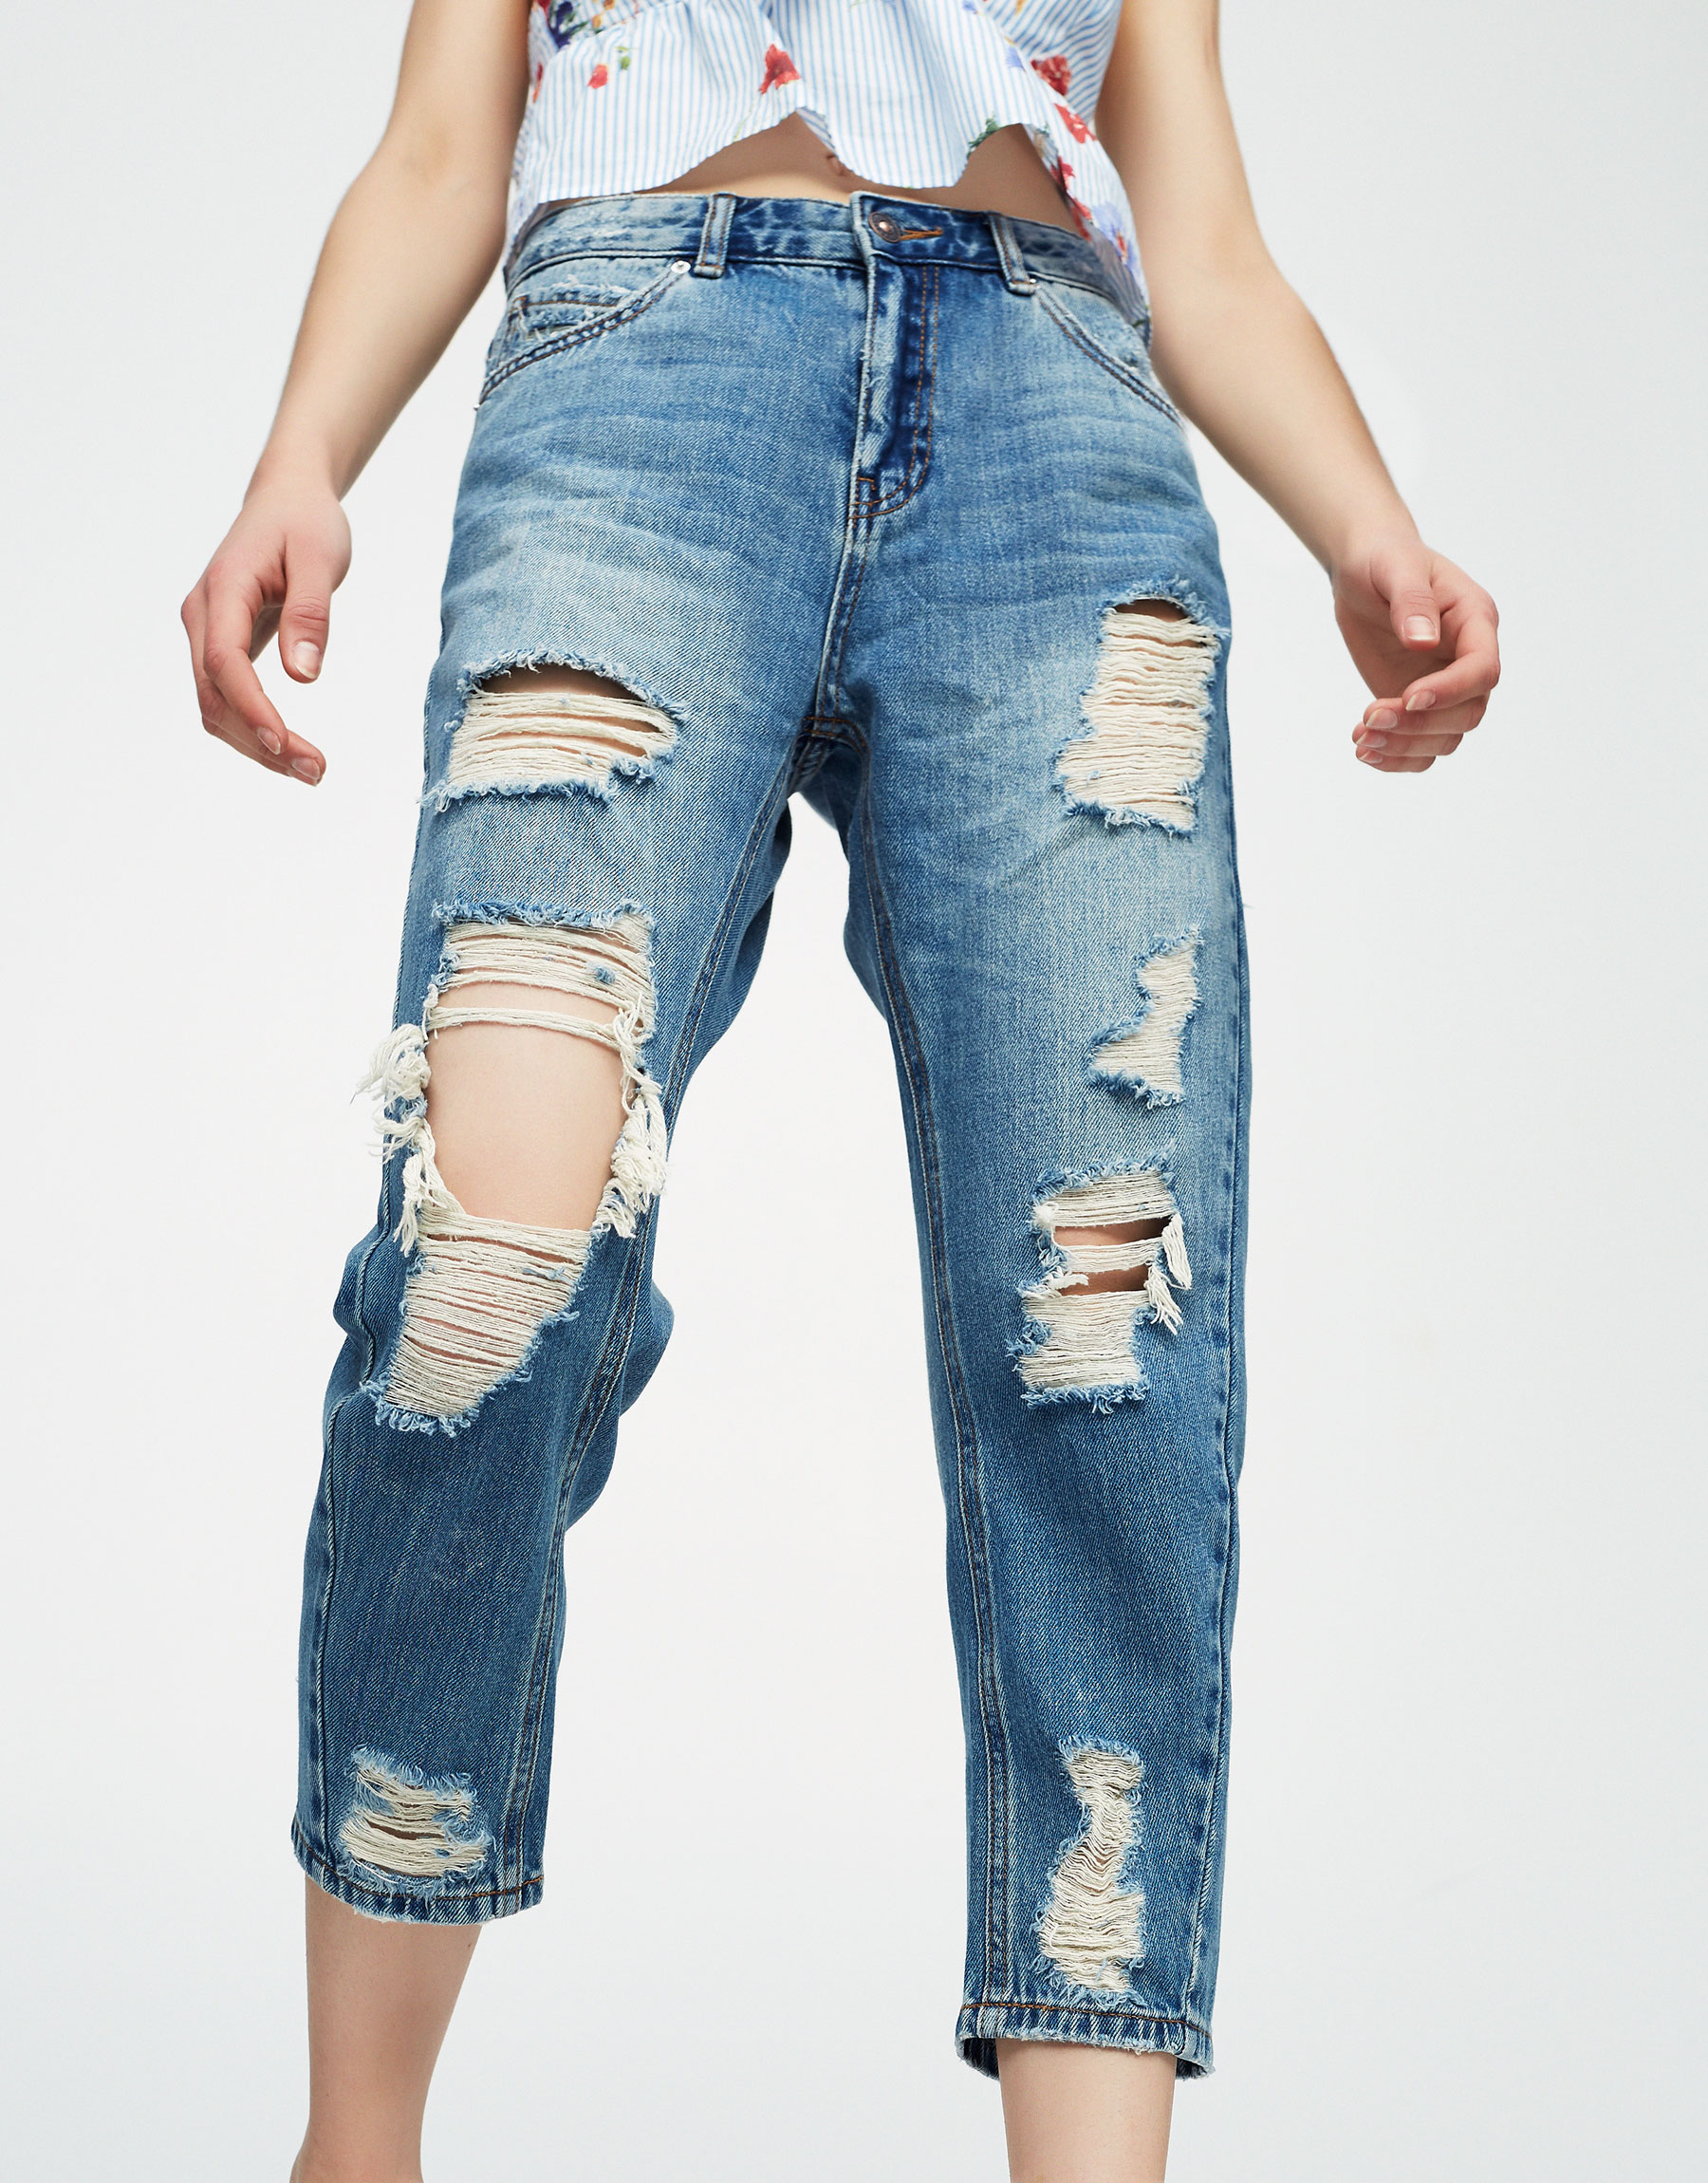 Collection jean. Baggy Fit джинсы. Baggy Denim джинсы. Denim collection джинсы женские boyfriend Fit. Baggy Jeans рваные.